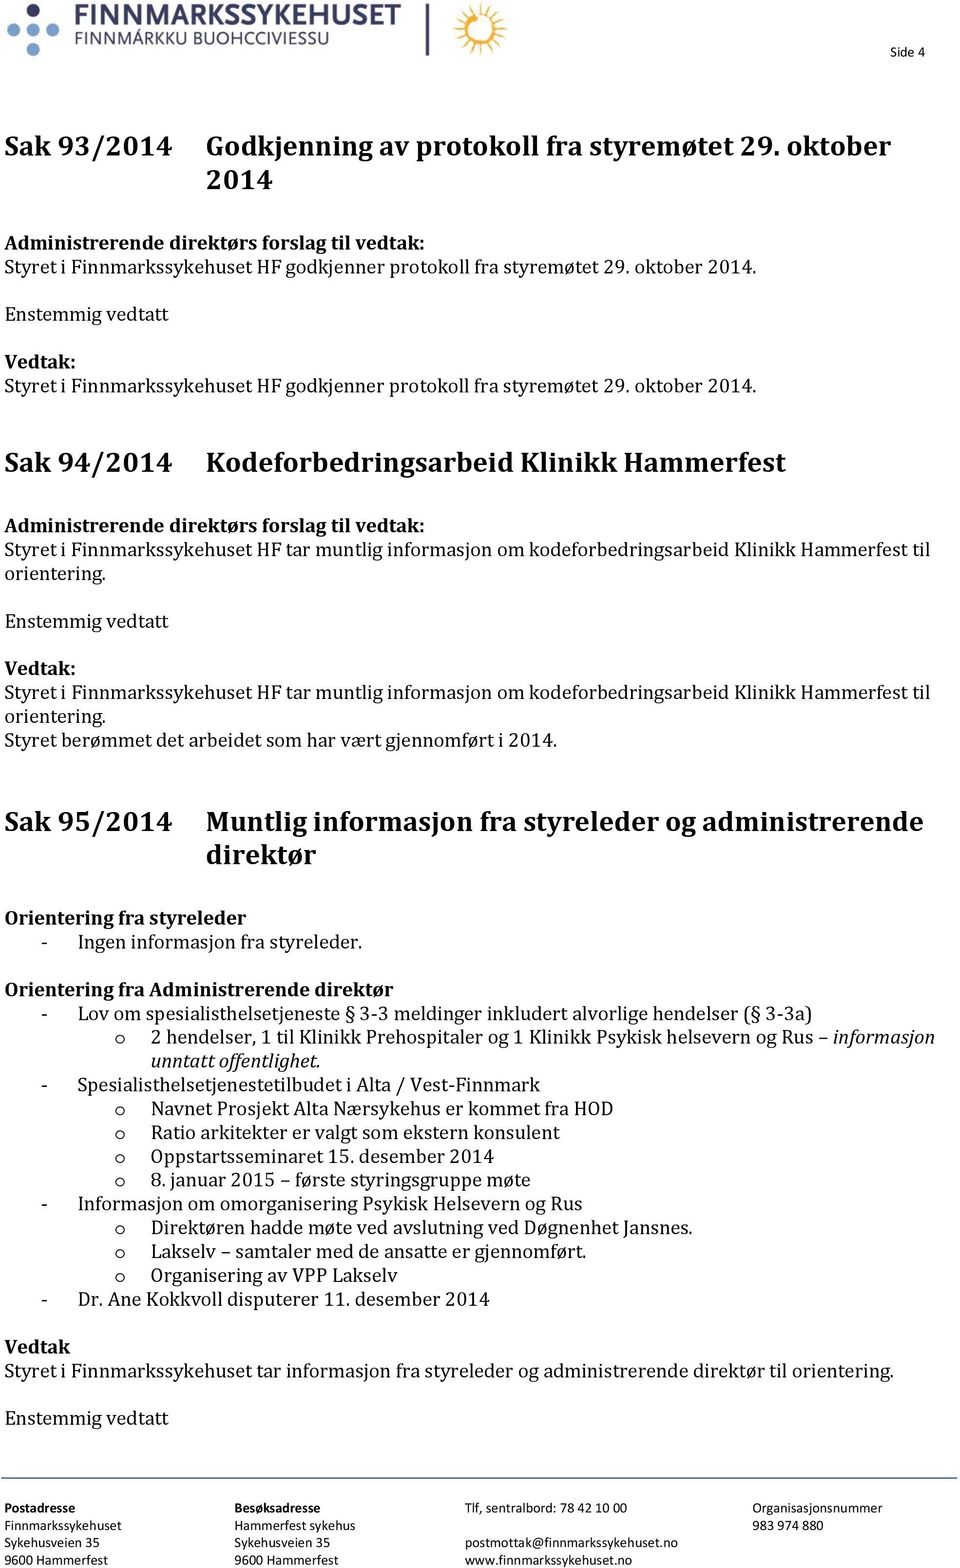 : Styret i Finnmarkssykehuset HF tar muntlig informasjon om kodeforbedringsarbeid Klinikk Hammerfest til orientering. Styret berømmet det arbeidet som har vært gjennomført i 2014.